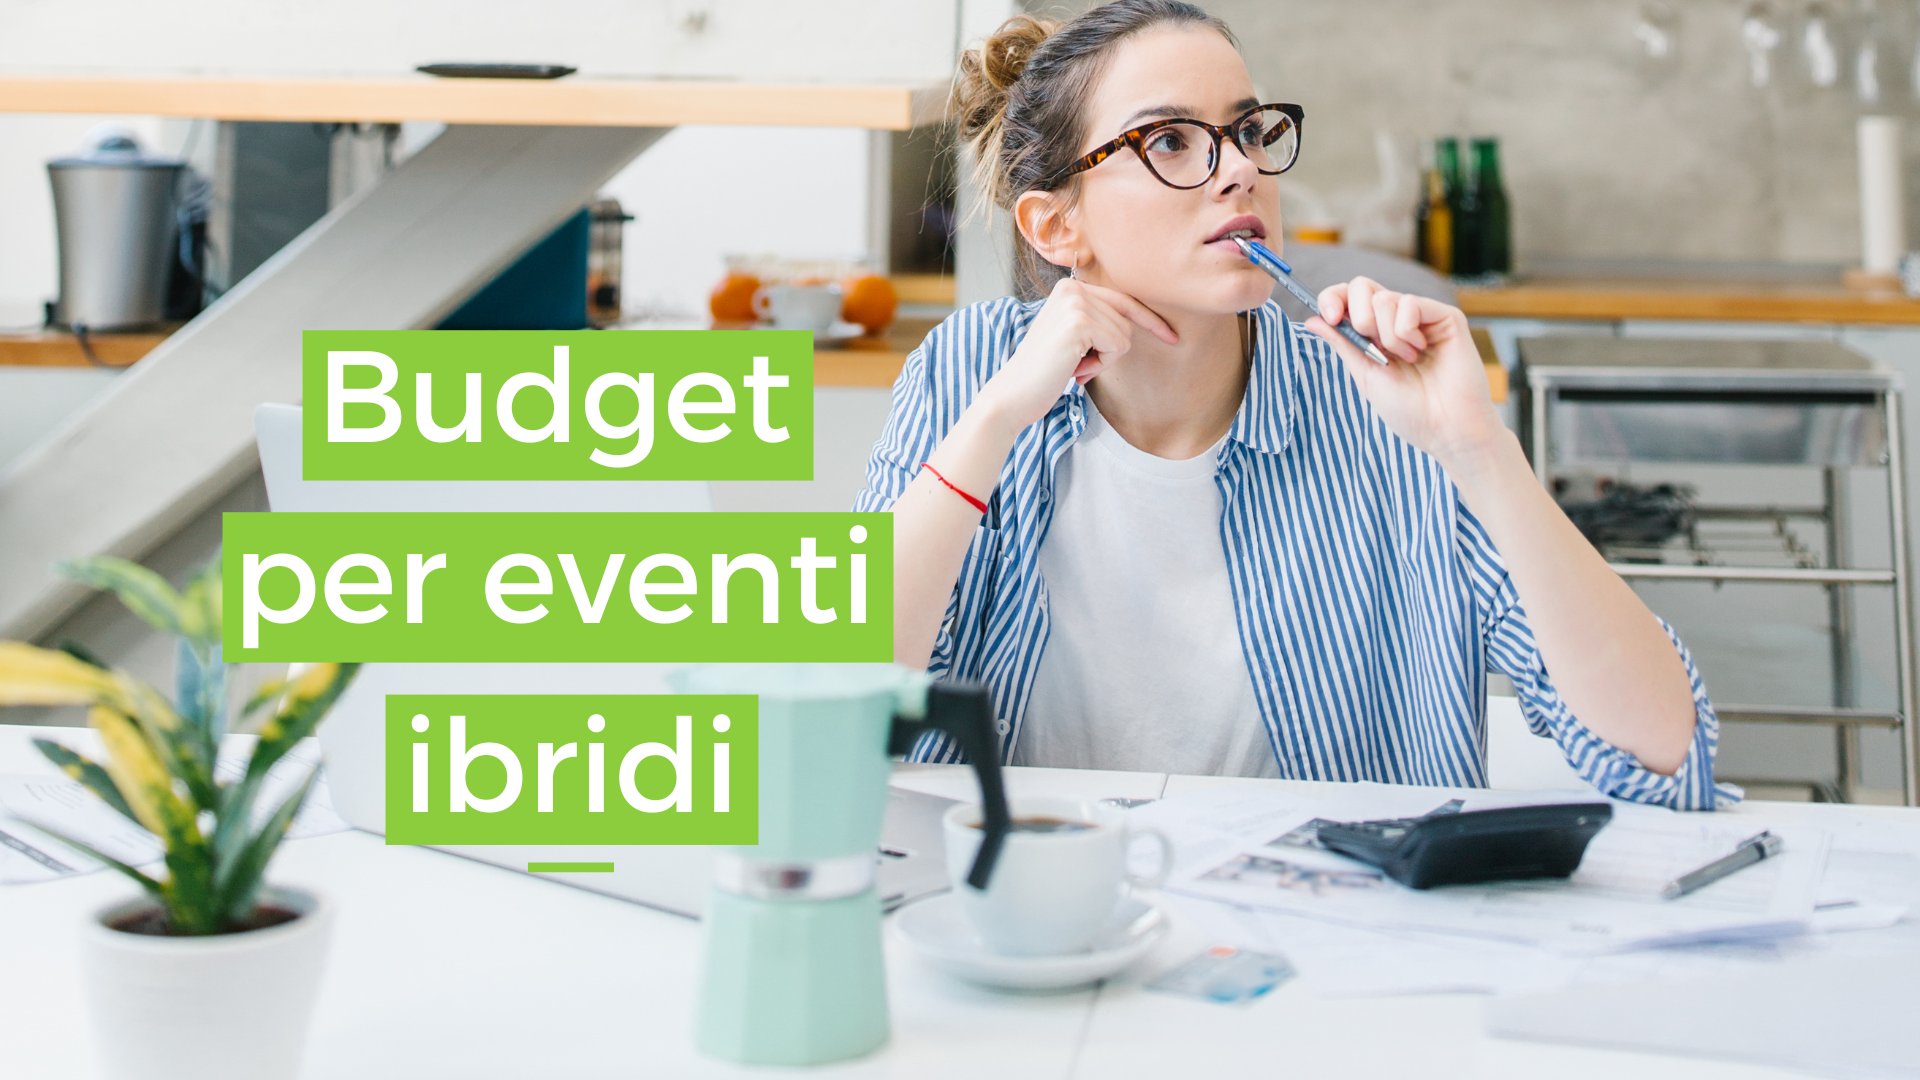 Budget per eventi ibridi: 7 elementi e suggerimenti da considerare